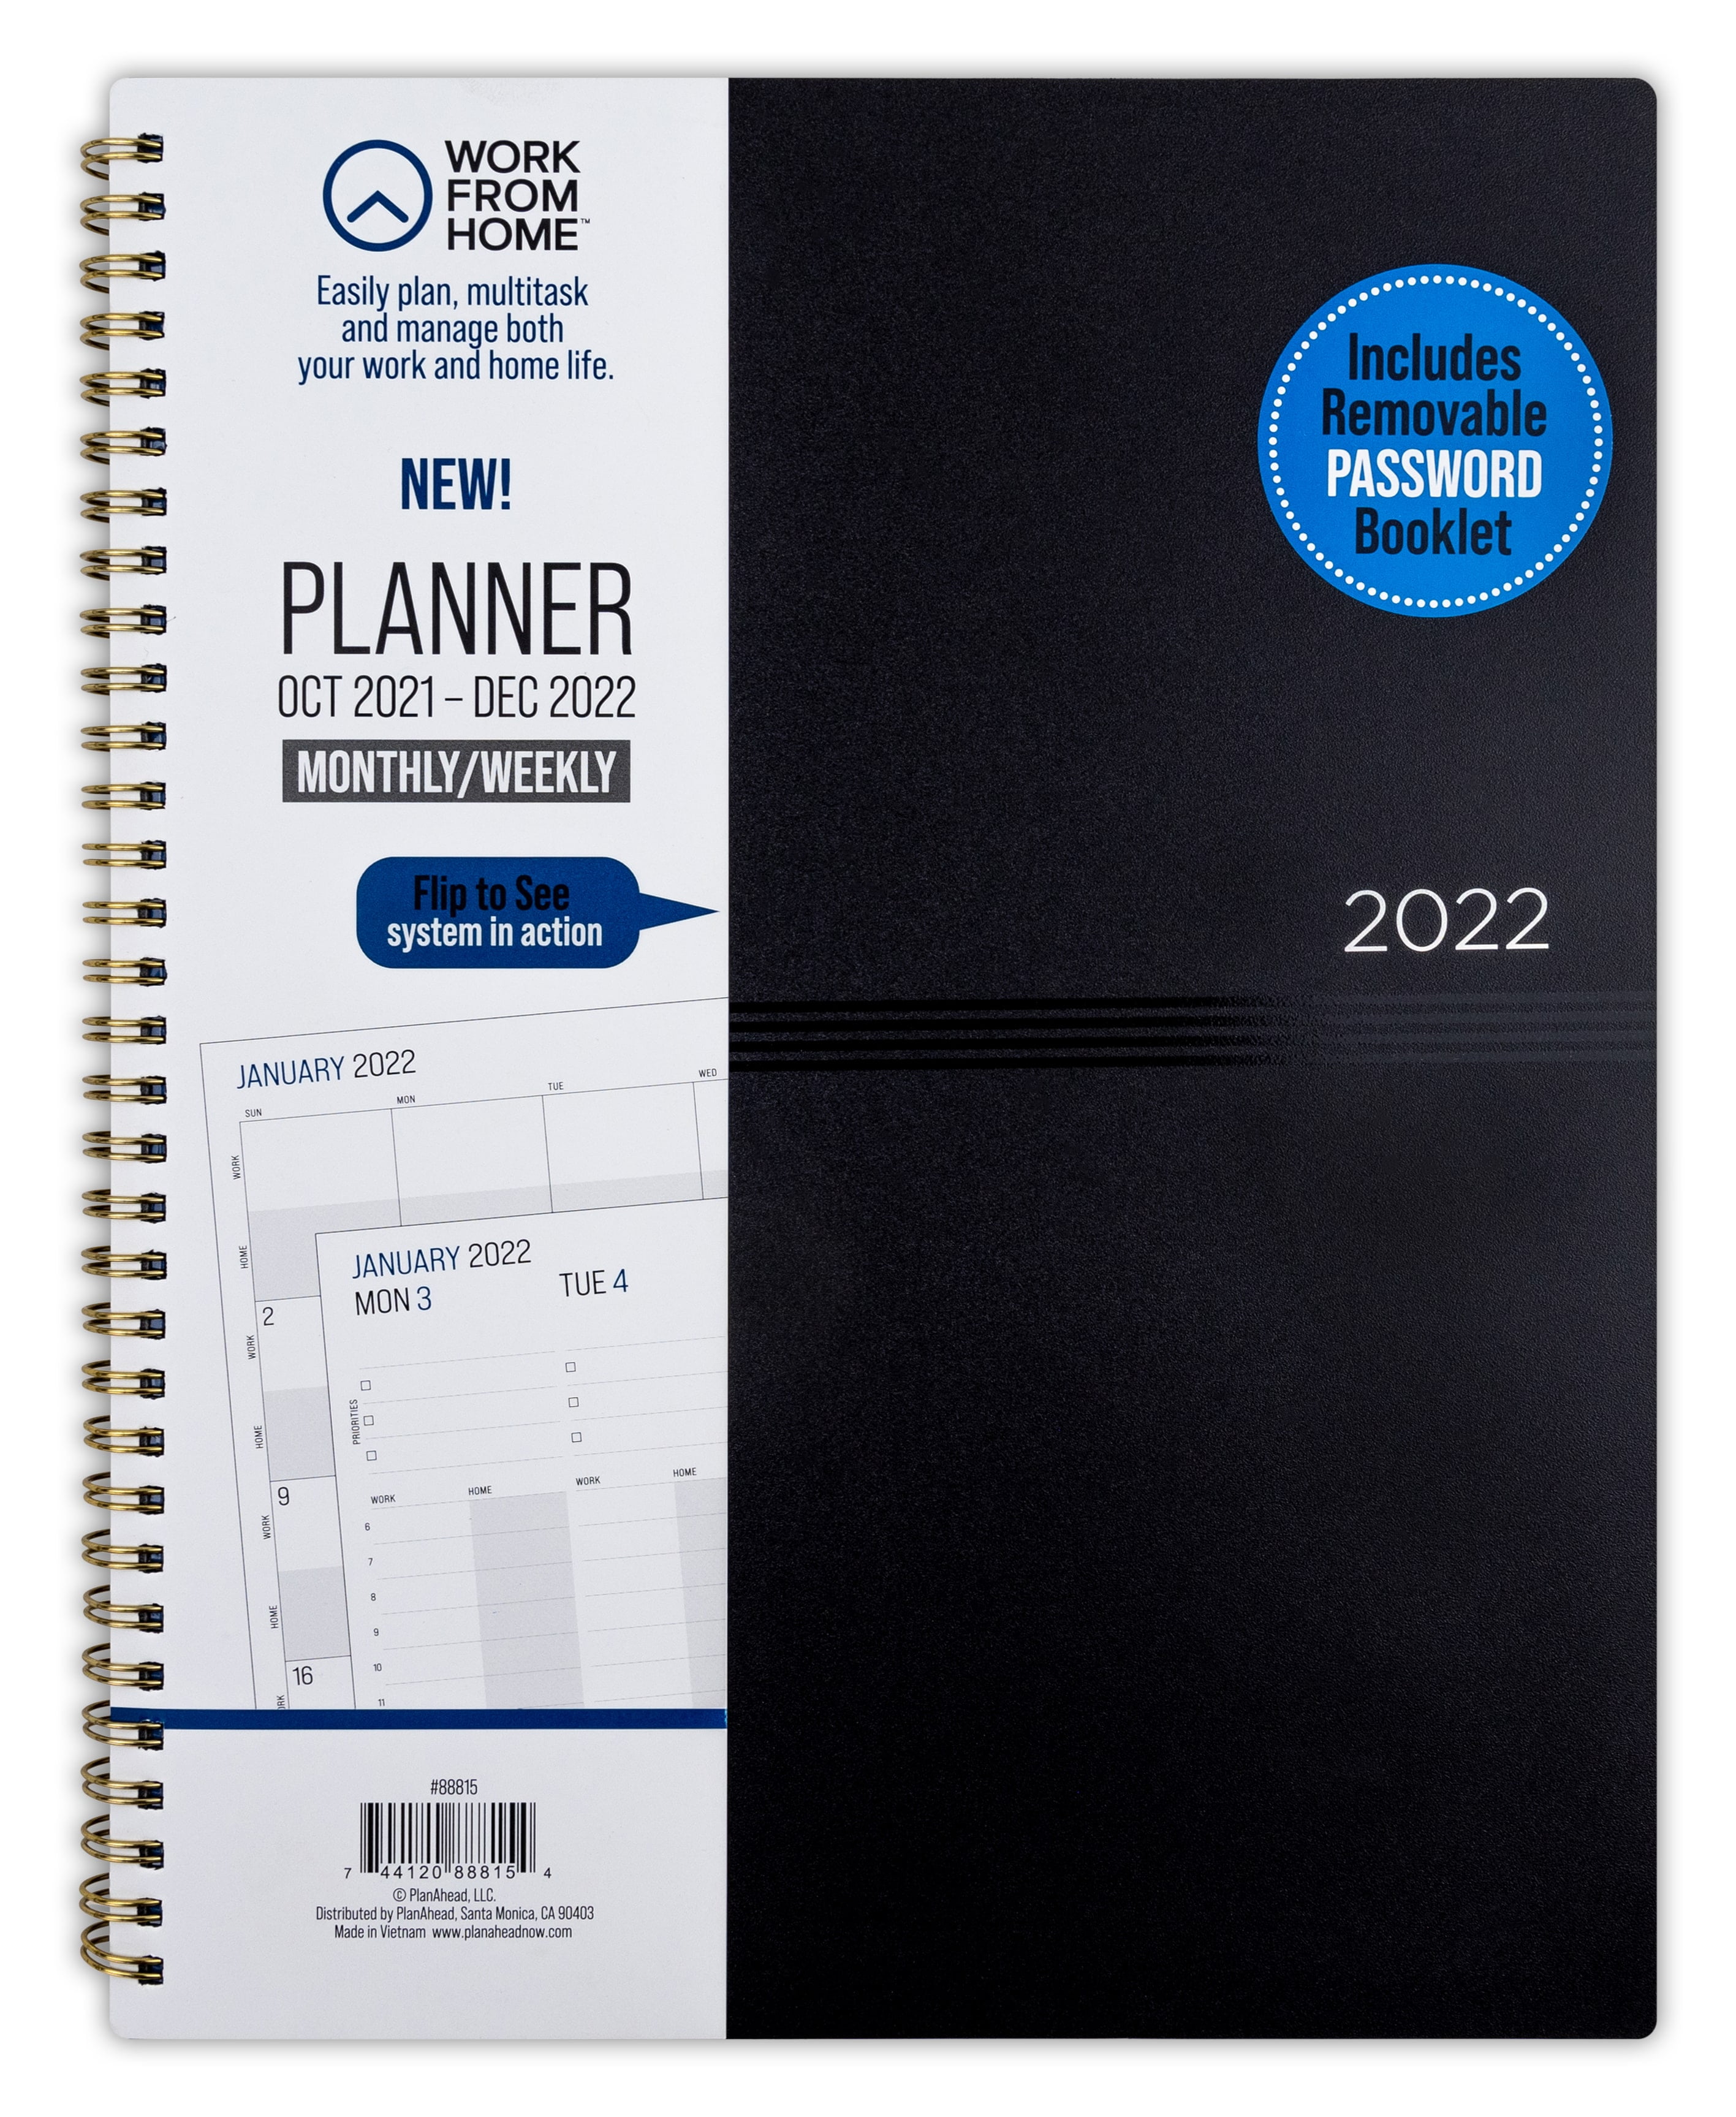 Pocket Size 4x6.5 inch Agenda Schedule Organizer Appointment Months Yearly Calendar Holidays Address Book password log Jan 2021 Three year planner Dec 2023